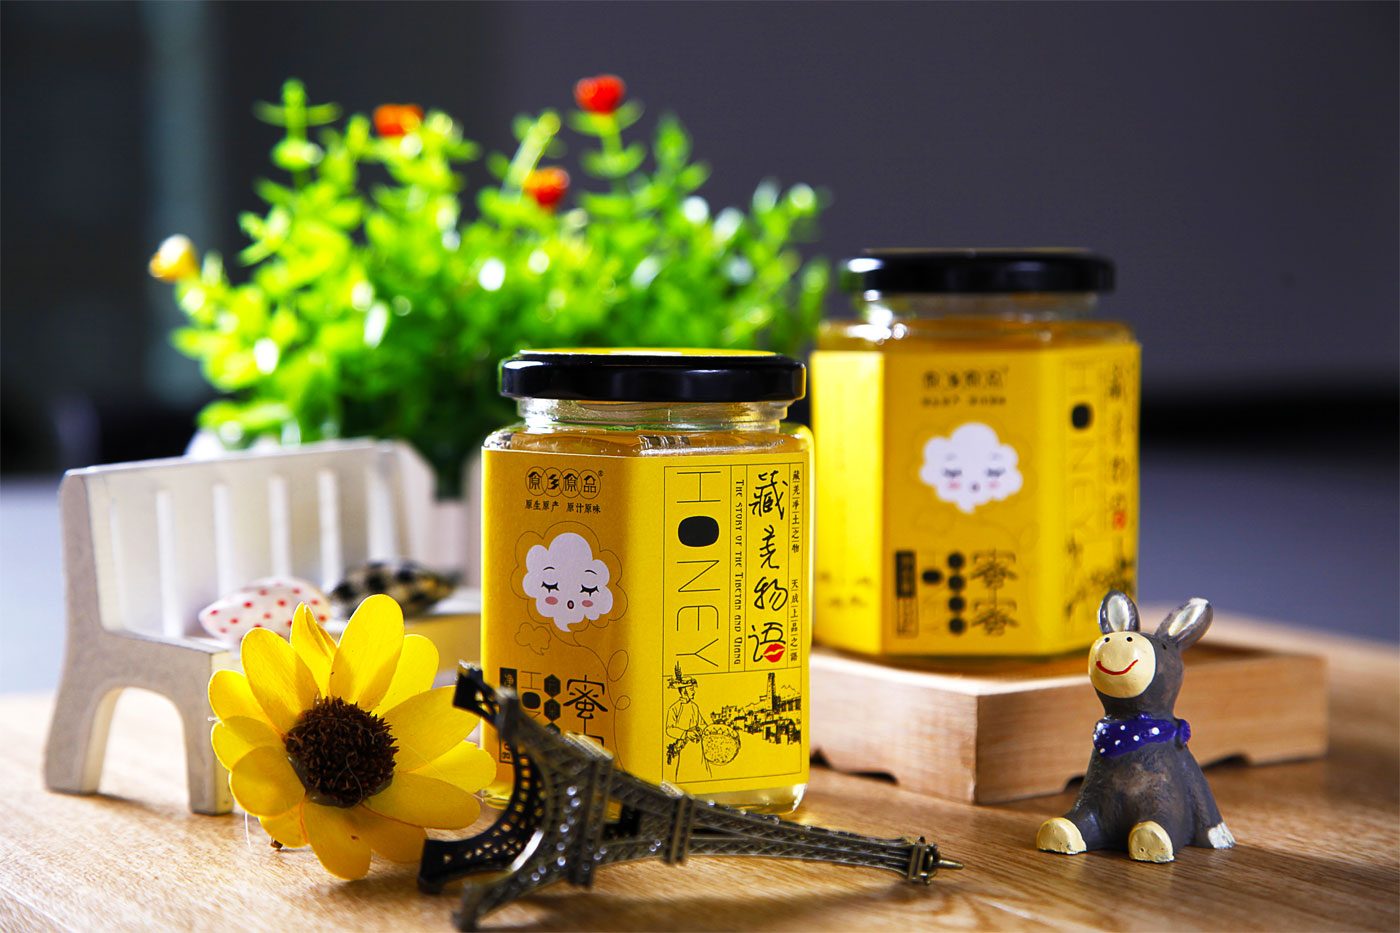 藏羌蜜语|云朵上的蜜蜜|蜂蜜包装设计公司|成都蜂蜜包装设计